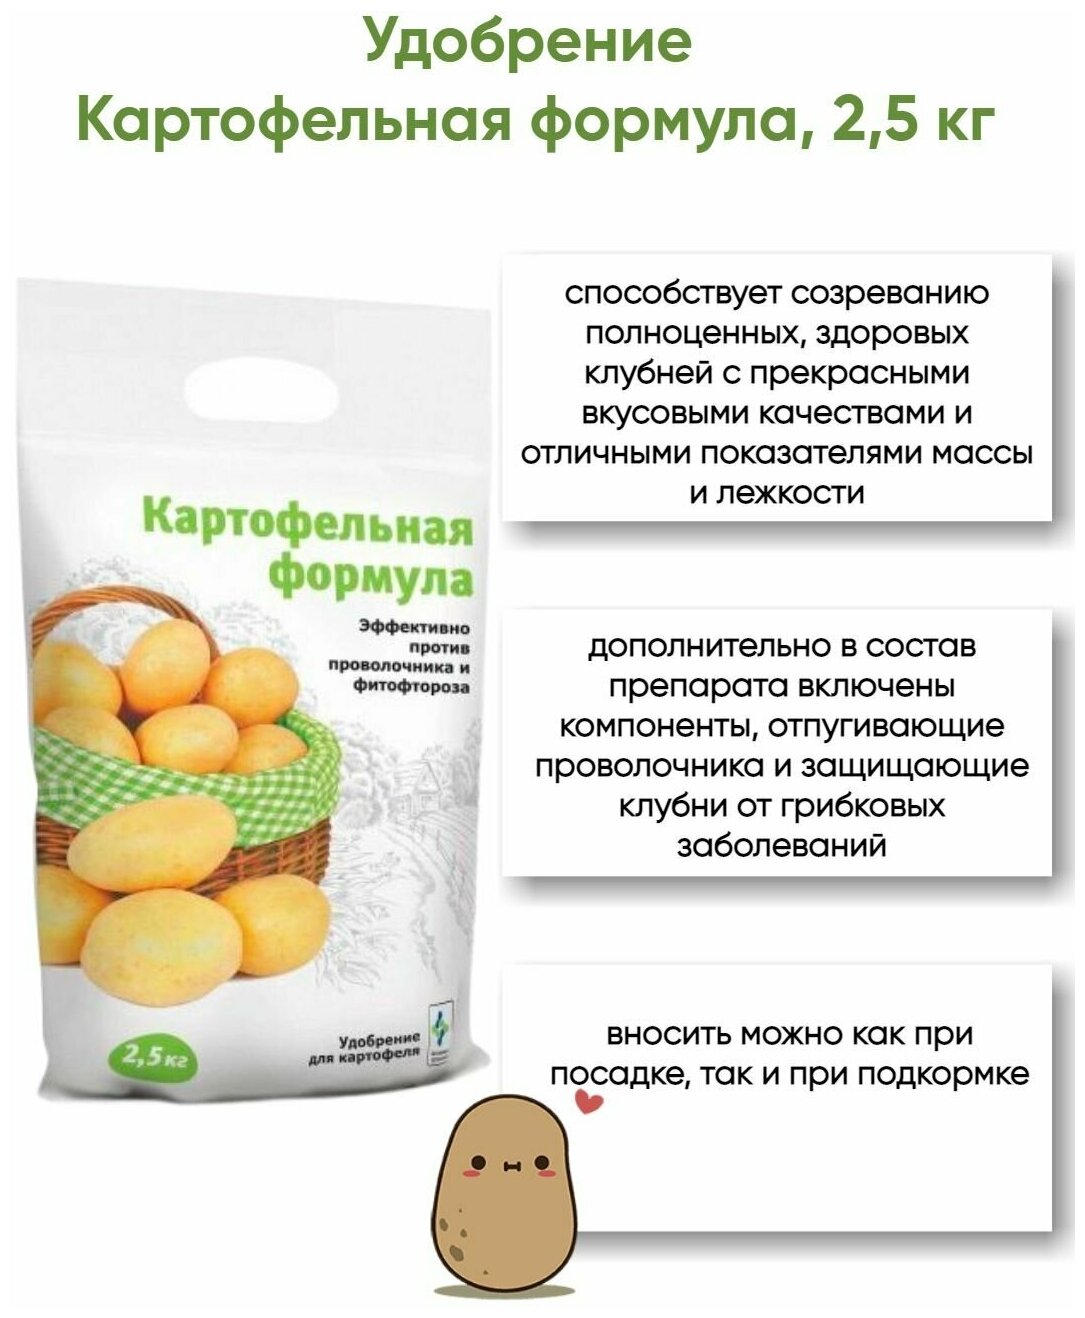 БиоМастер удобрение Картофельная формула, 2,5 кг